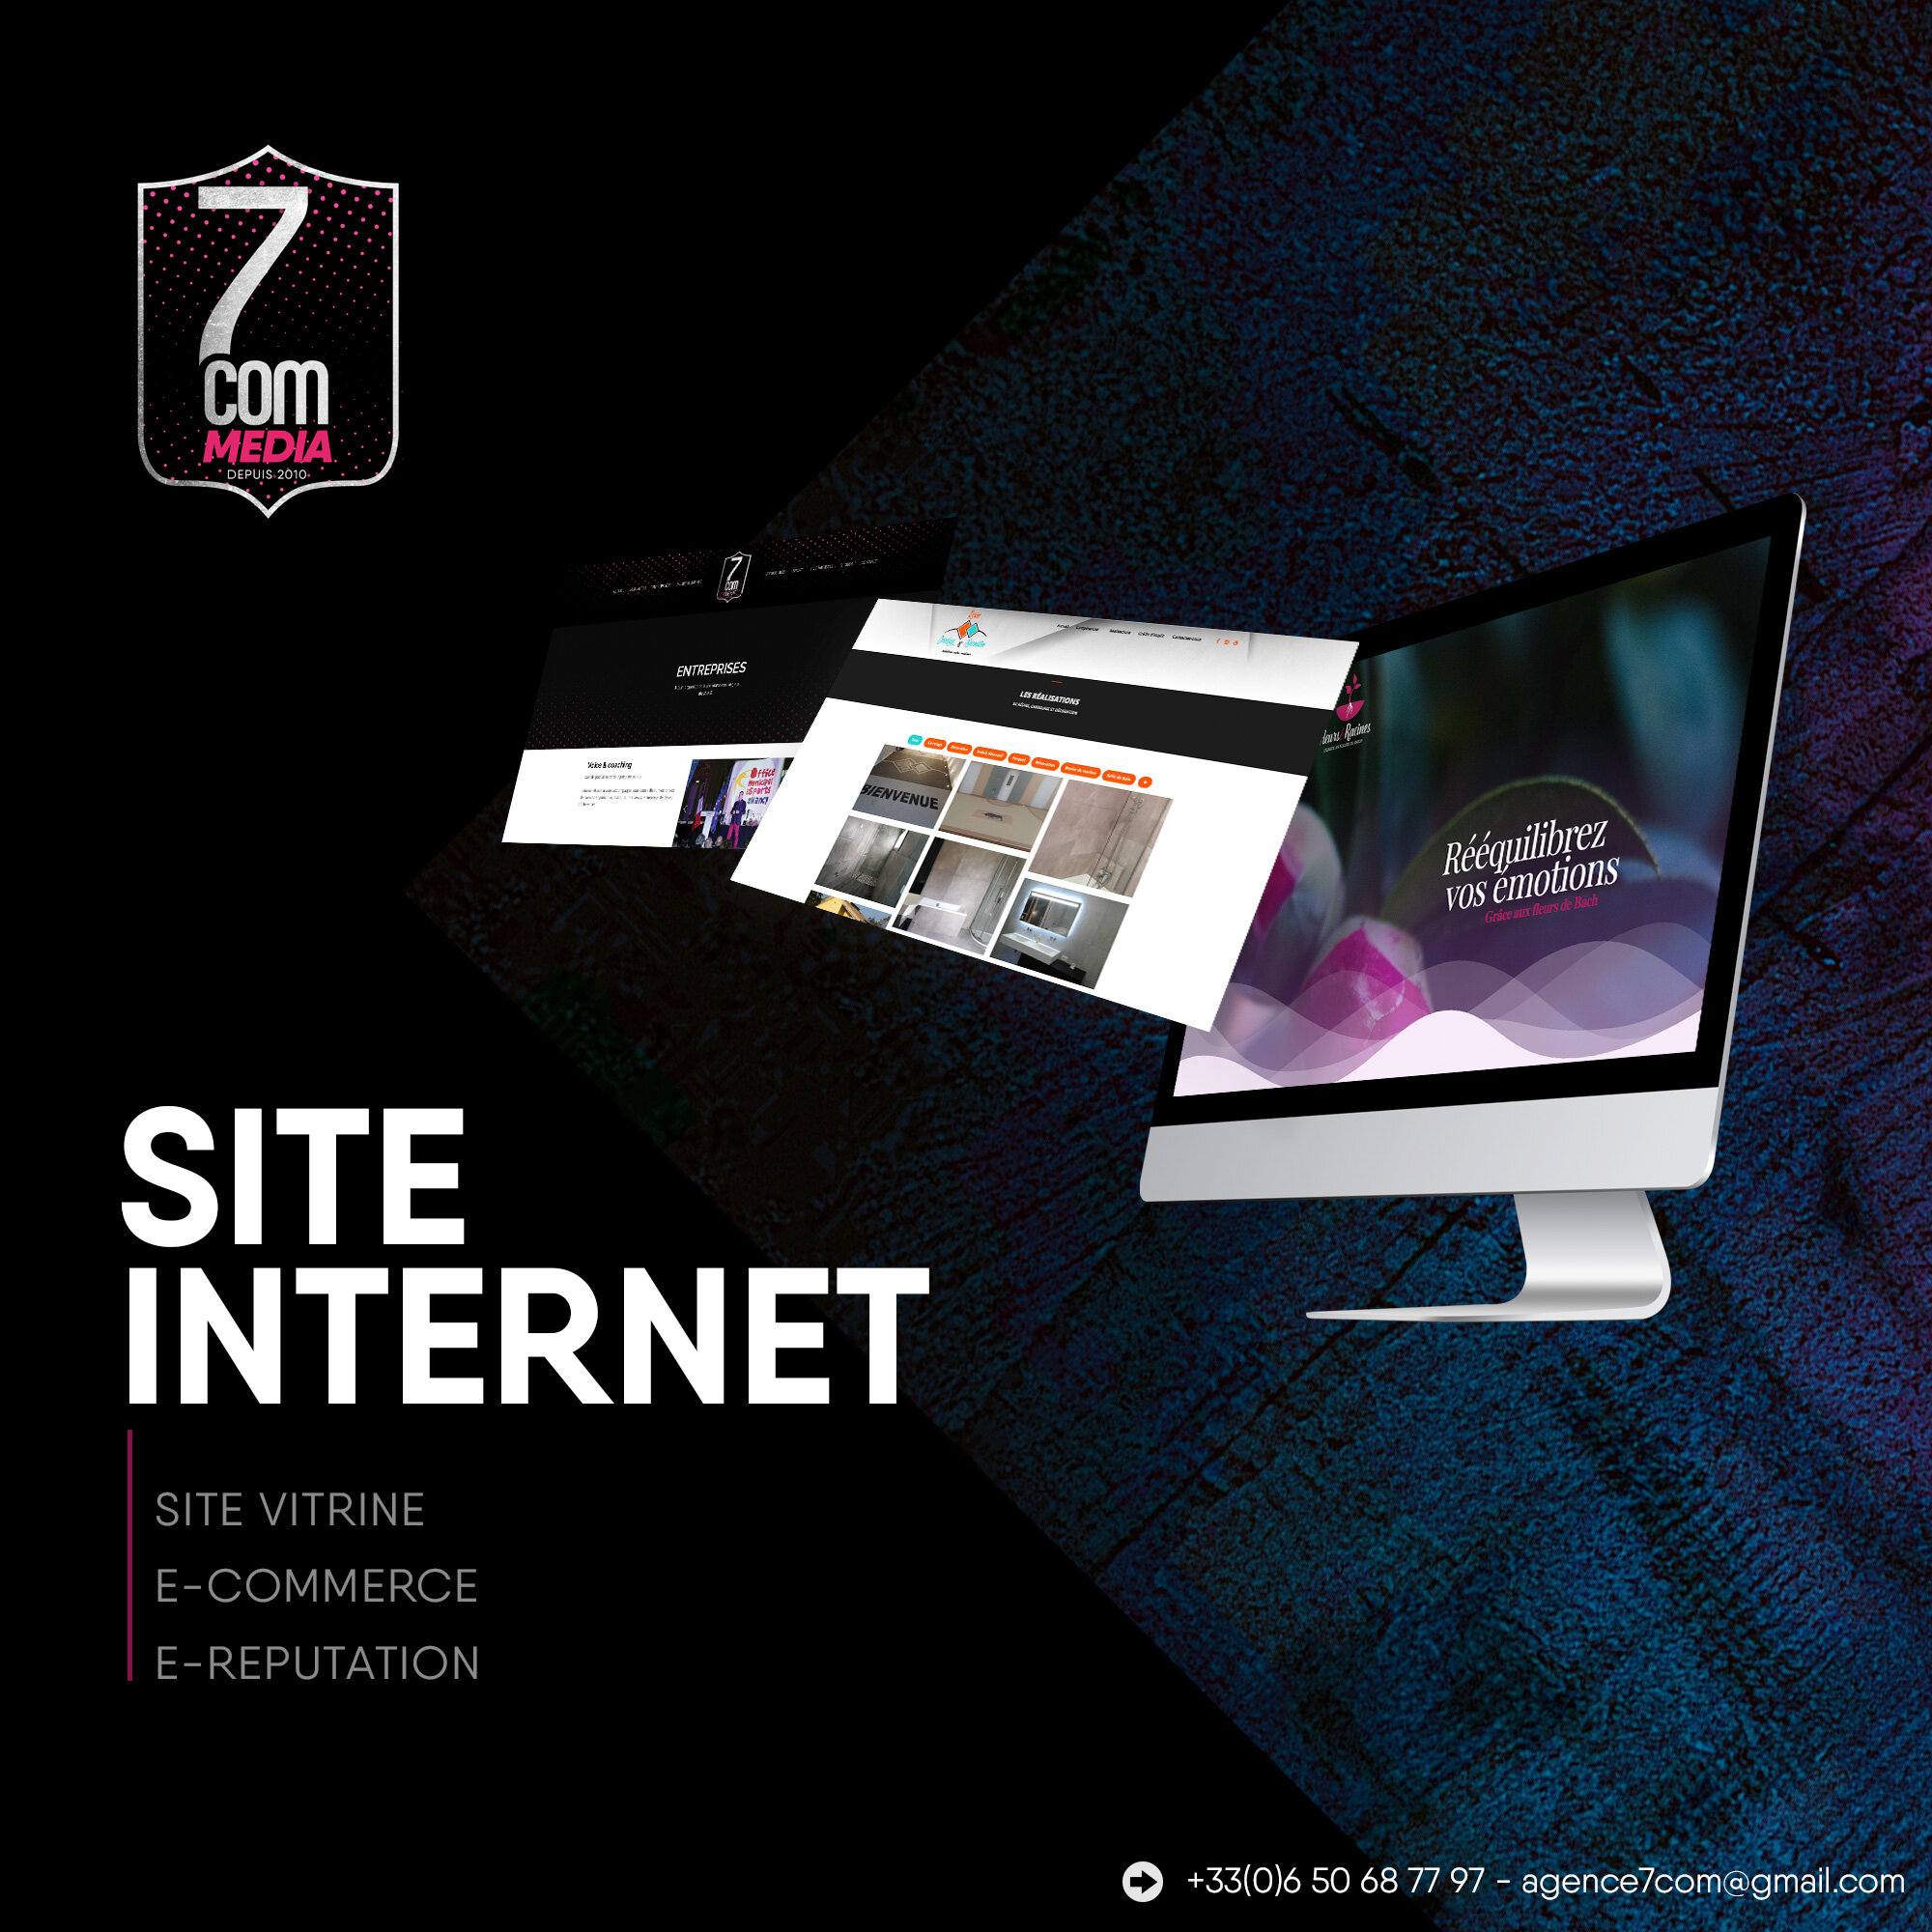 7com-site-internet.jpg